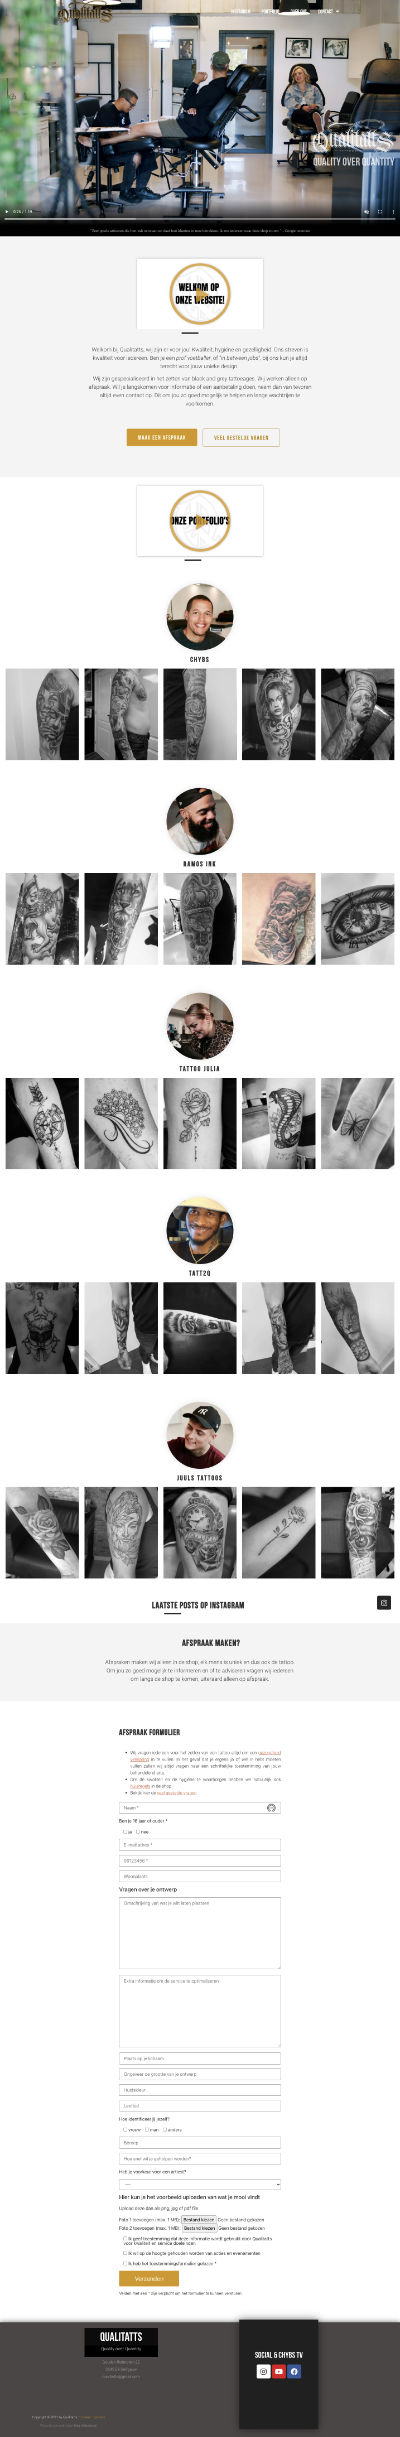 Voorbeeld WordPress website tattooshop